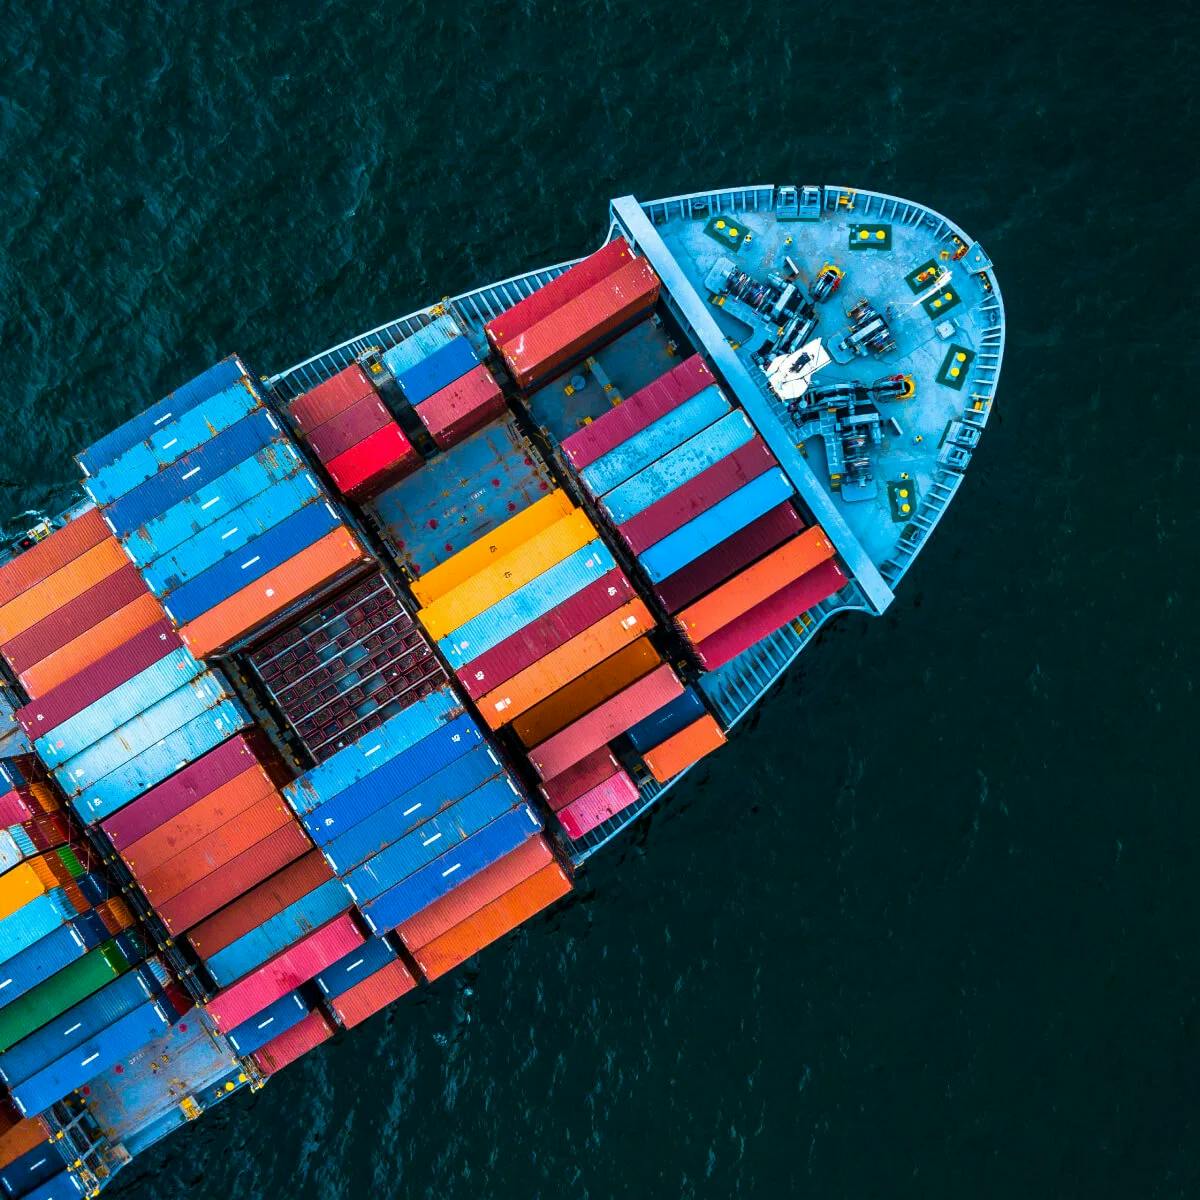 Vista aérea deslumbrante: Navio cargueiro repleto de containers